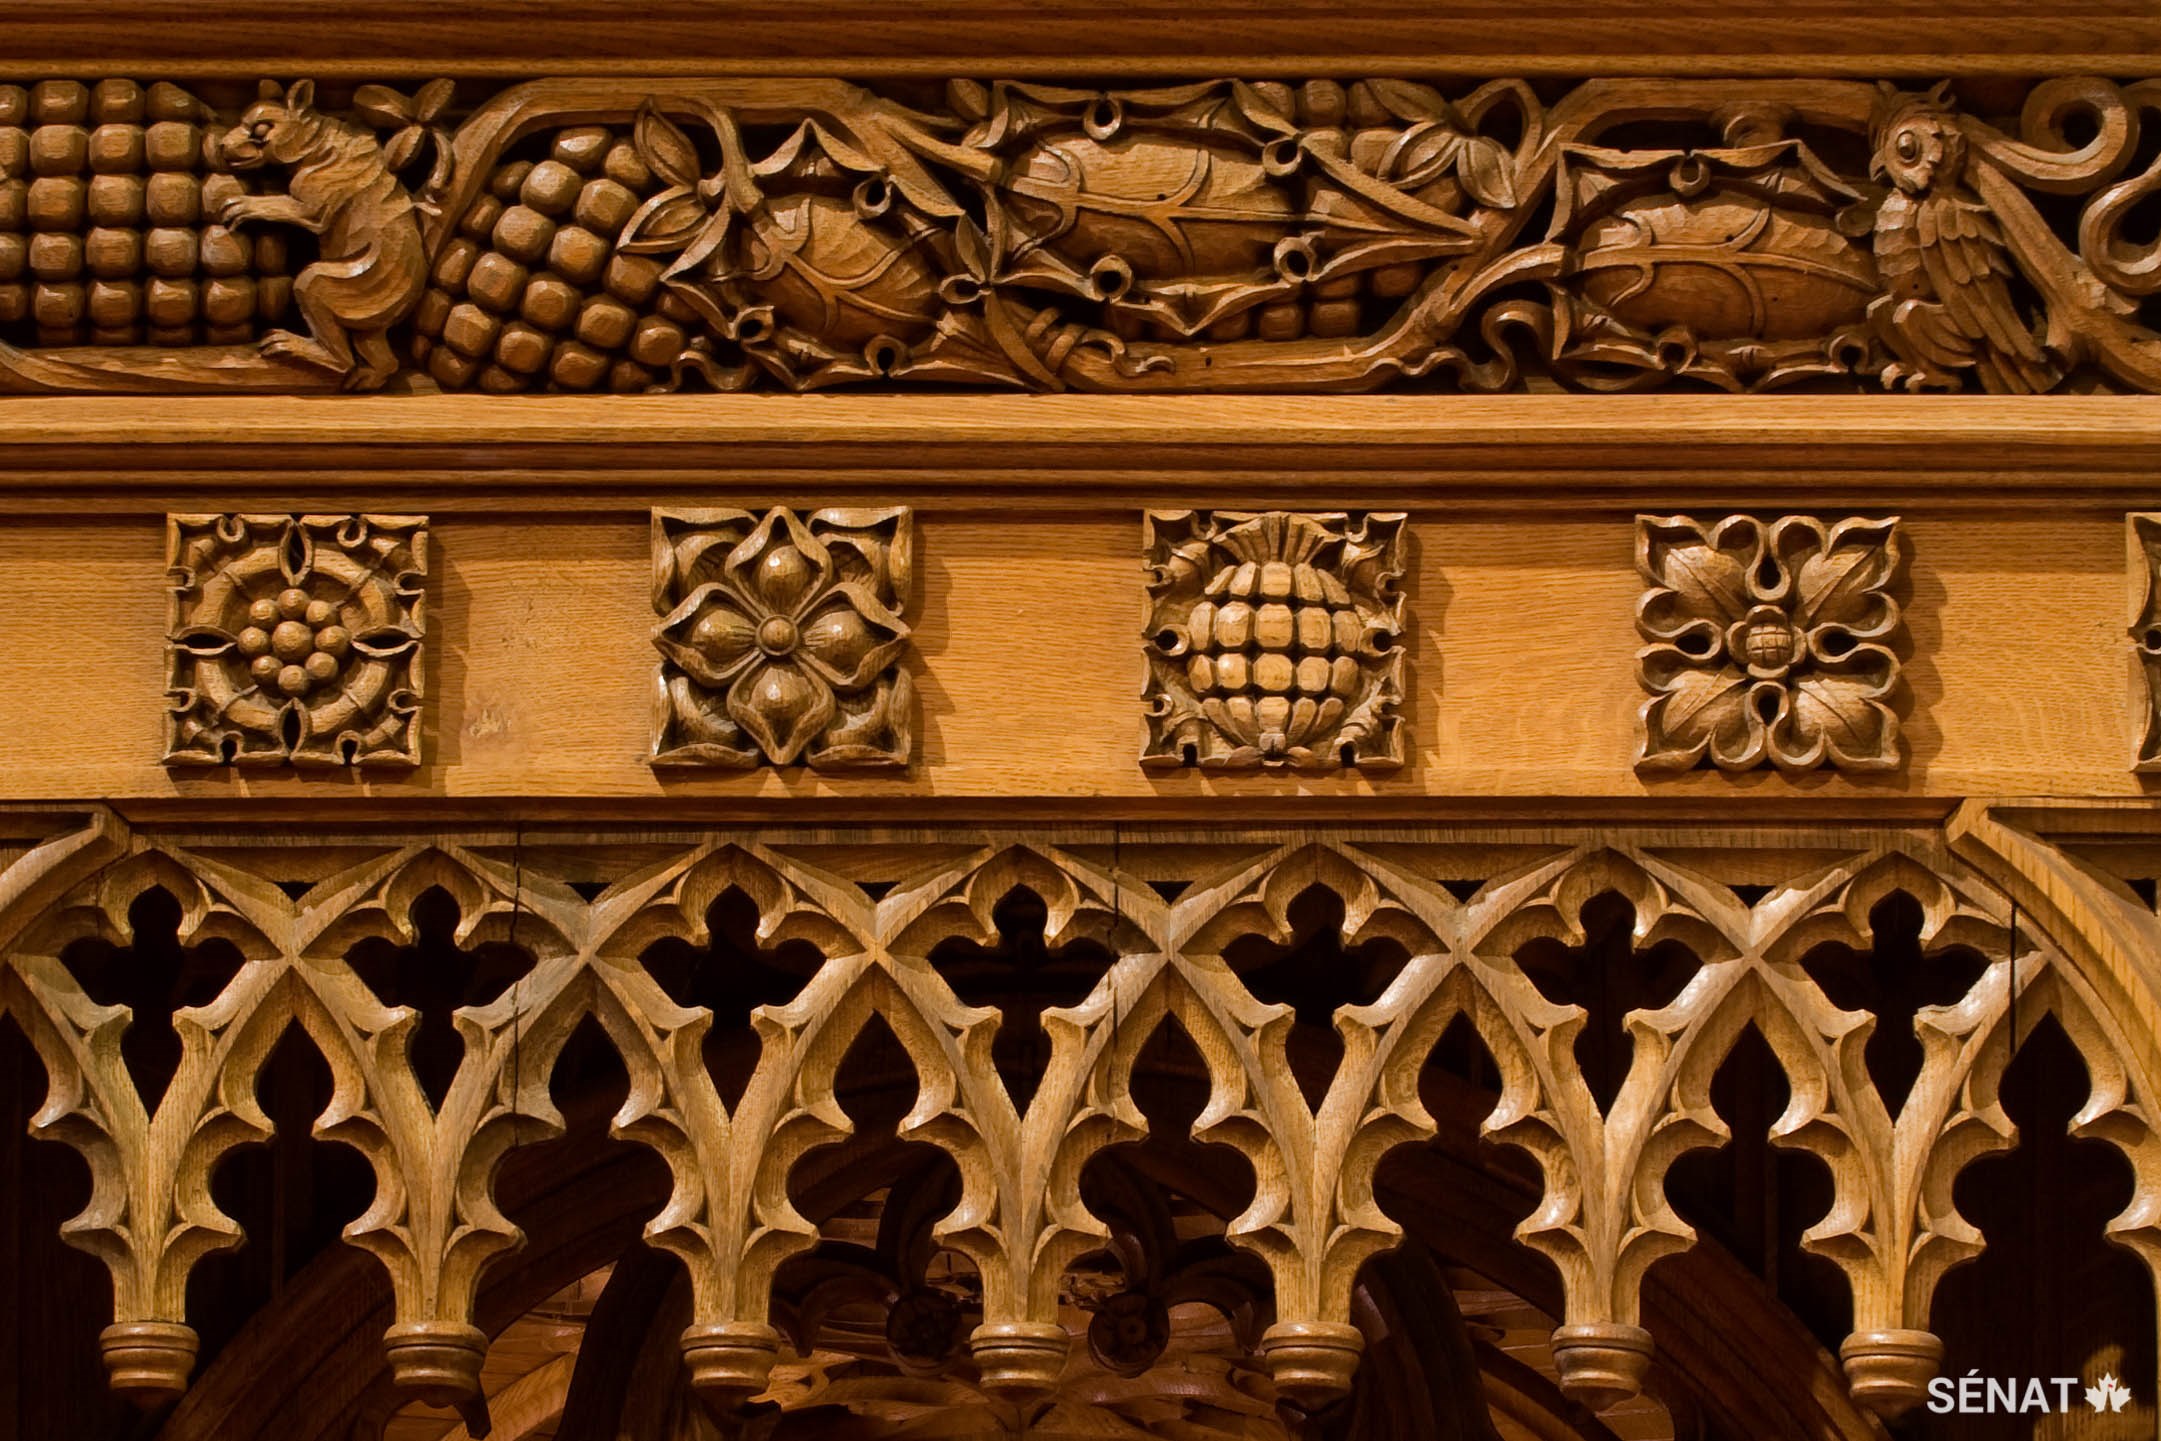 Des écureuils, des lapins et des geais, qui représentent l’industrie et l’énergie infinie, sont sculptés dans la boiserie de chêne de la Chambre du Sénat, réalisé dans les années 1920.